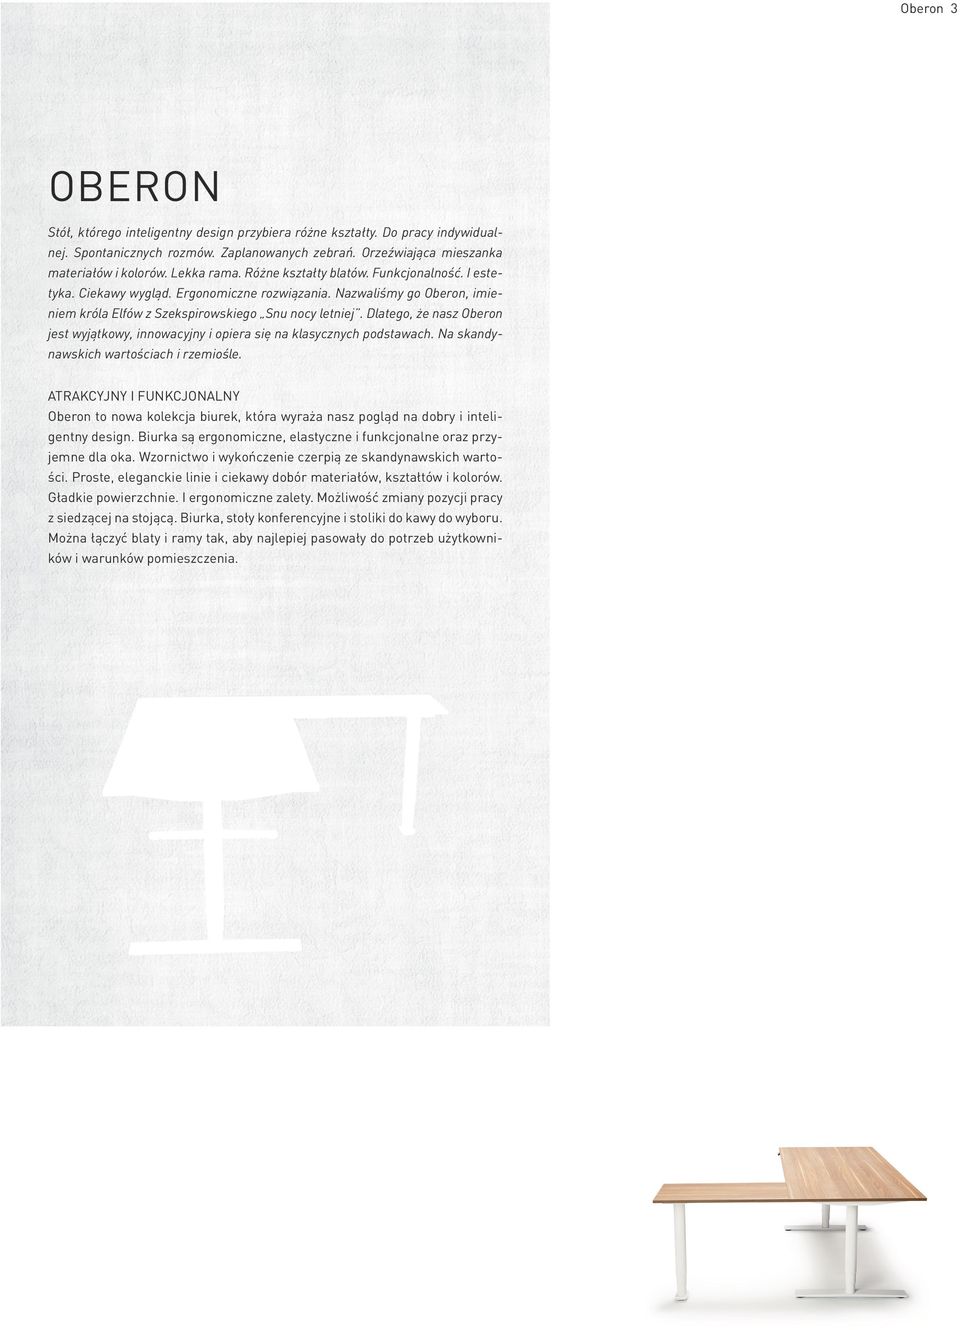 Dlatego, że nasz Oberon jest wyjątkowy, innowacyjny i opiera się na klasycznych podstawach. Na skandynawskich wartościach i rzemiośle.